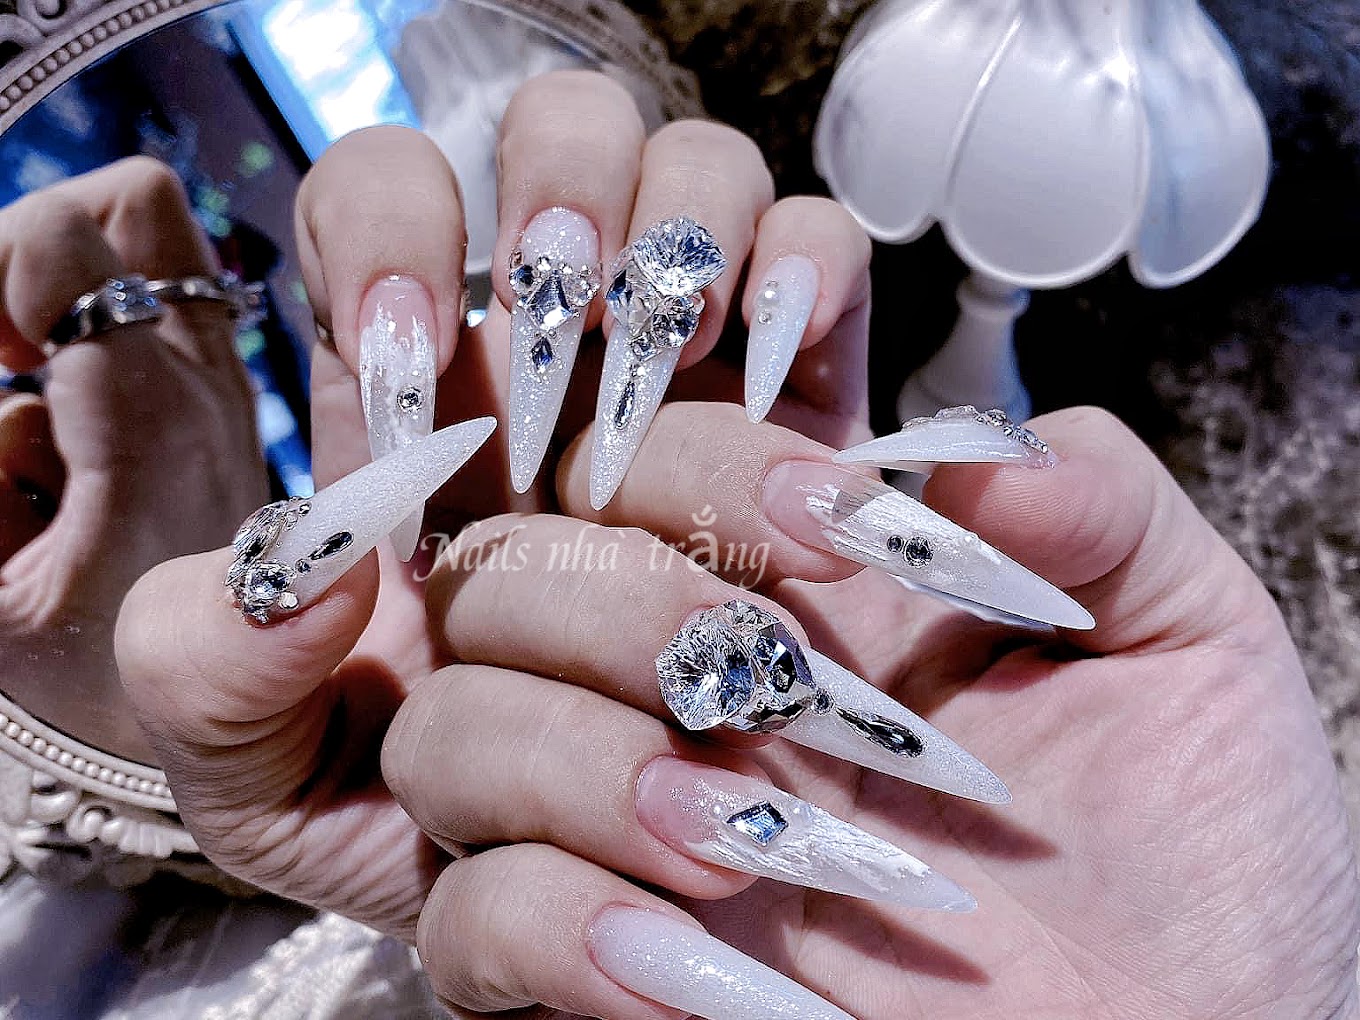 Nails nhà trắng